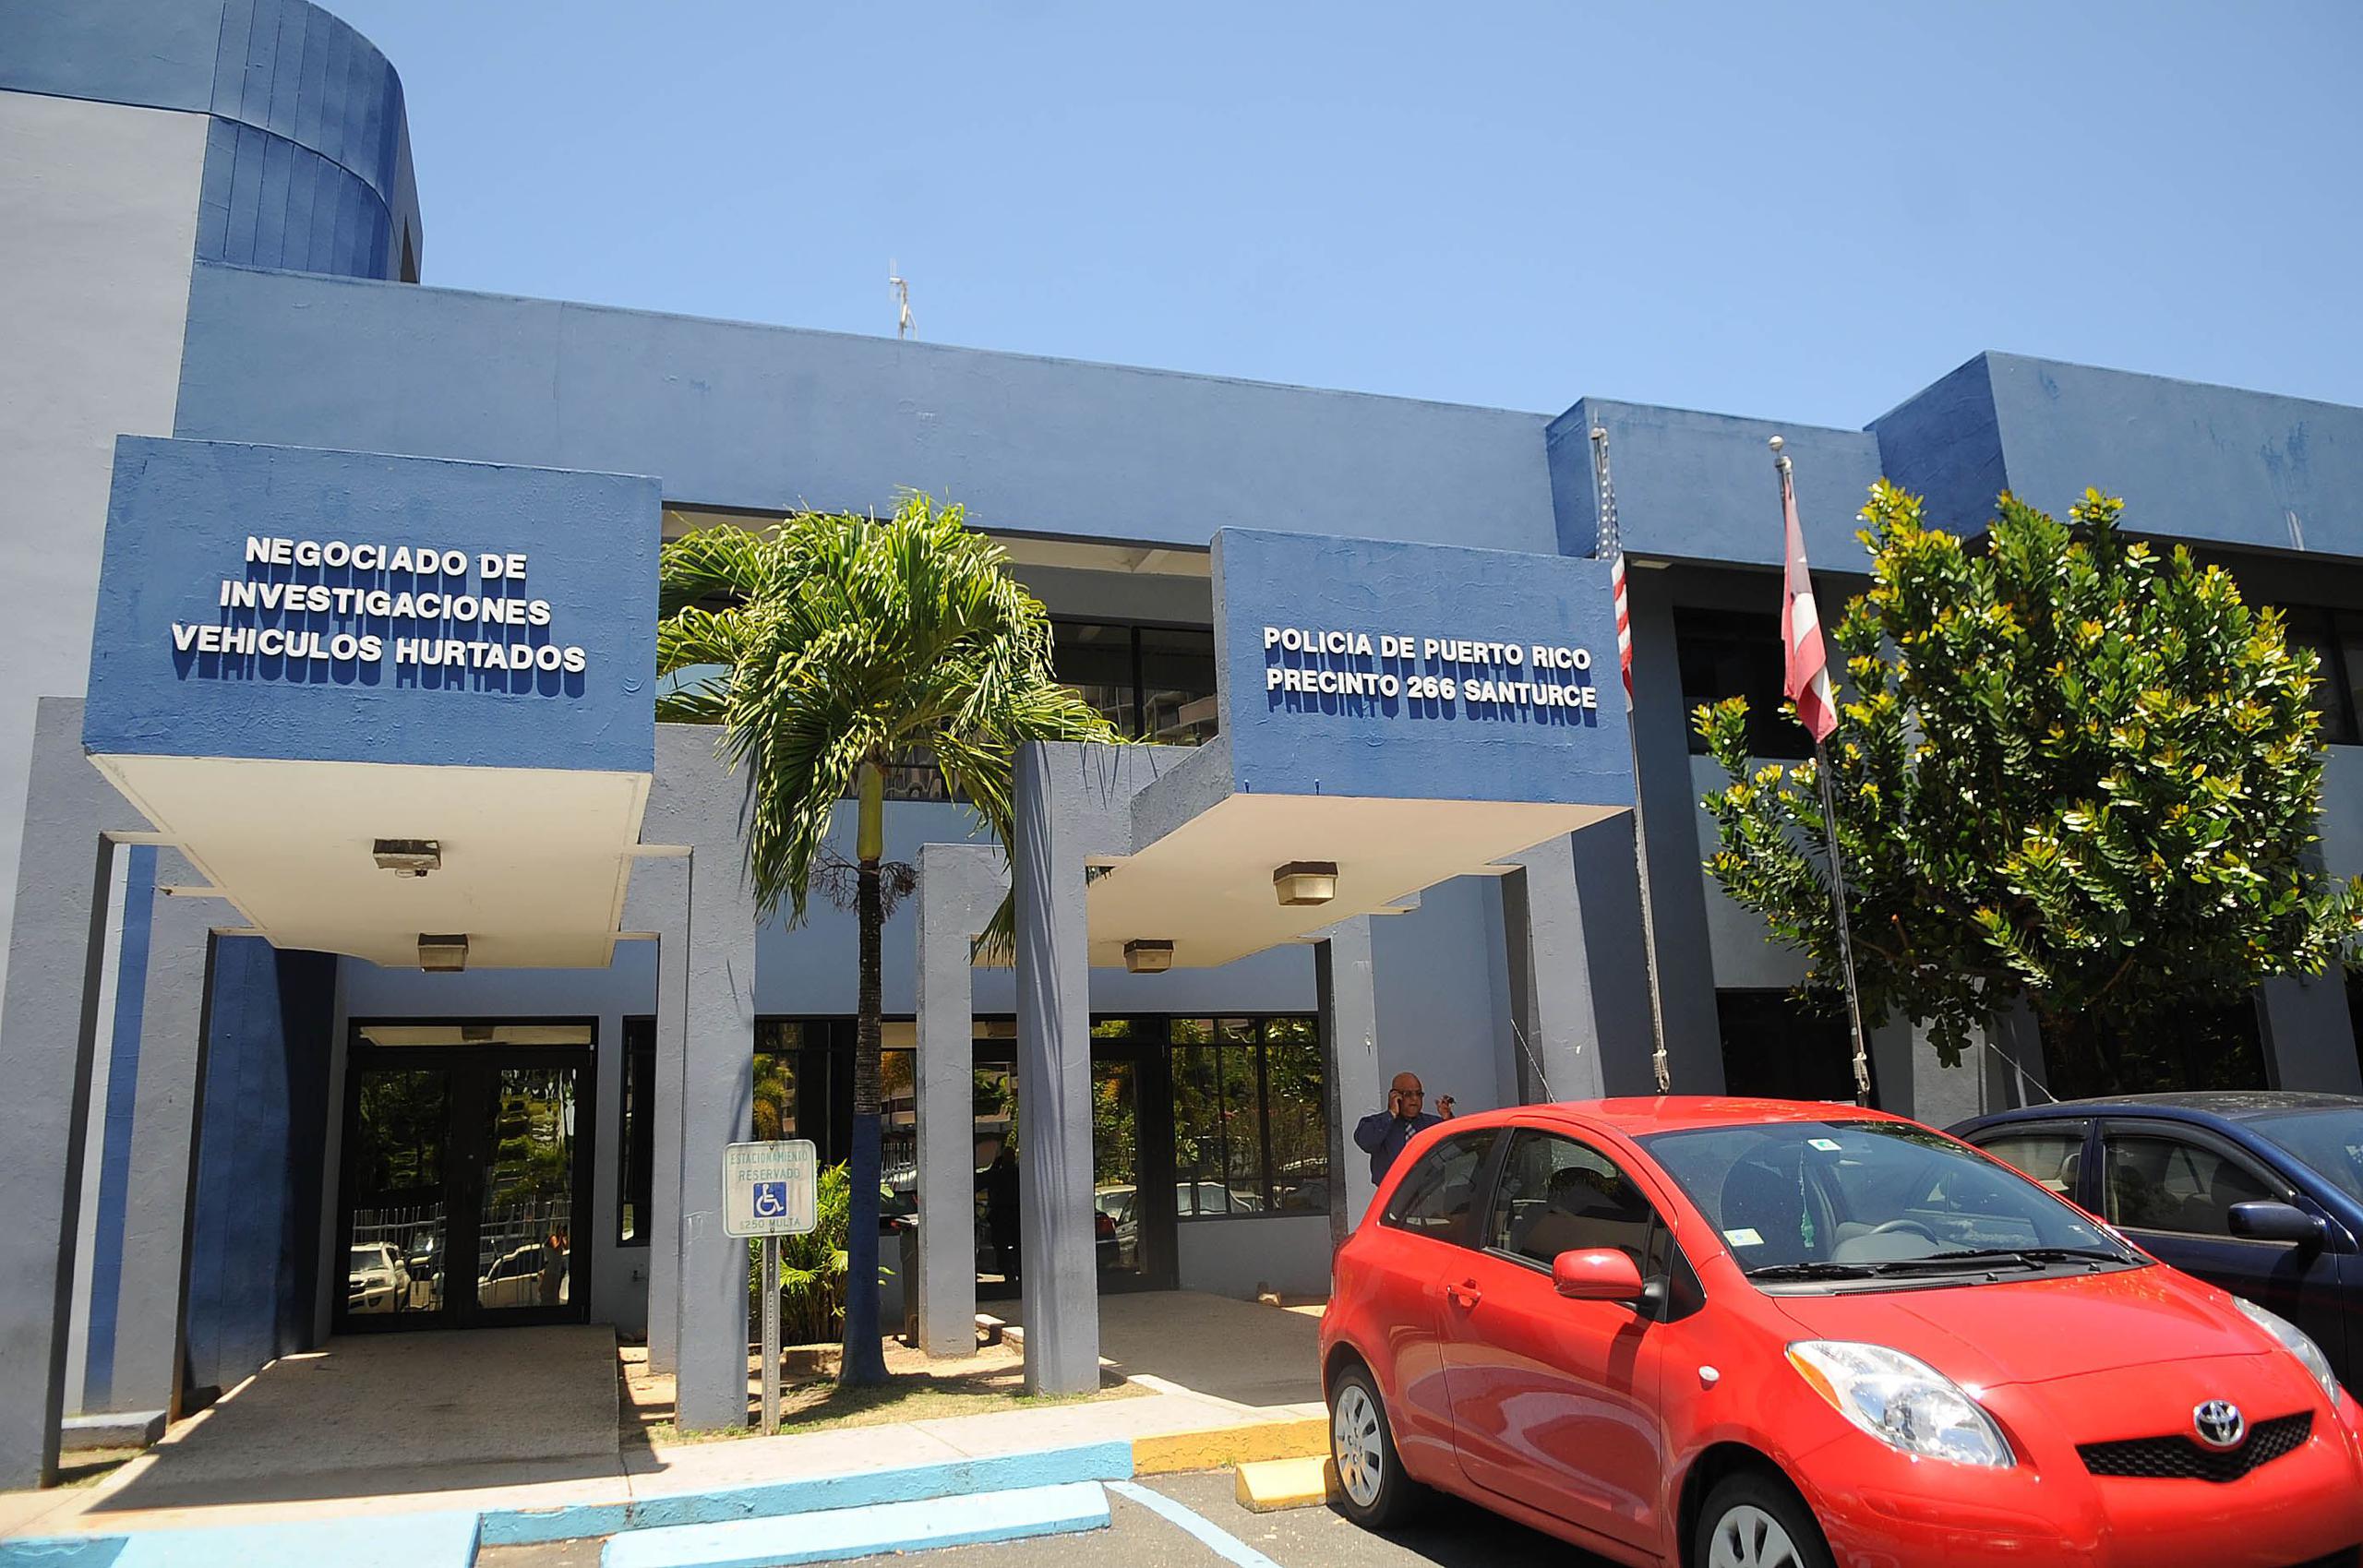 La División de Vehículos Hurtados de San Juan está a cargo de las pesquisas. (GFR Media)